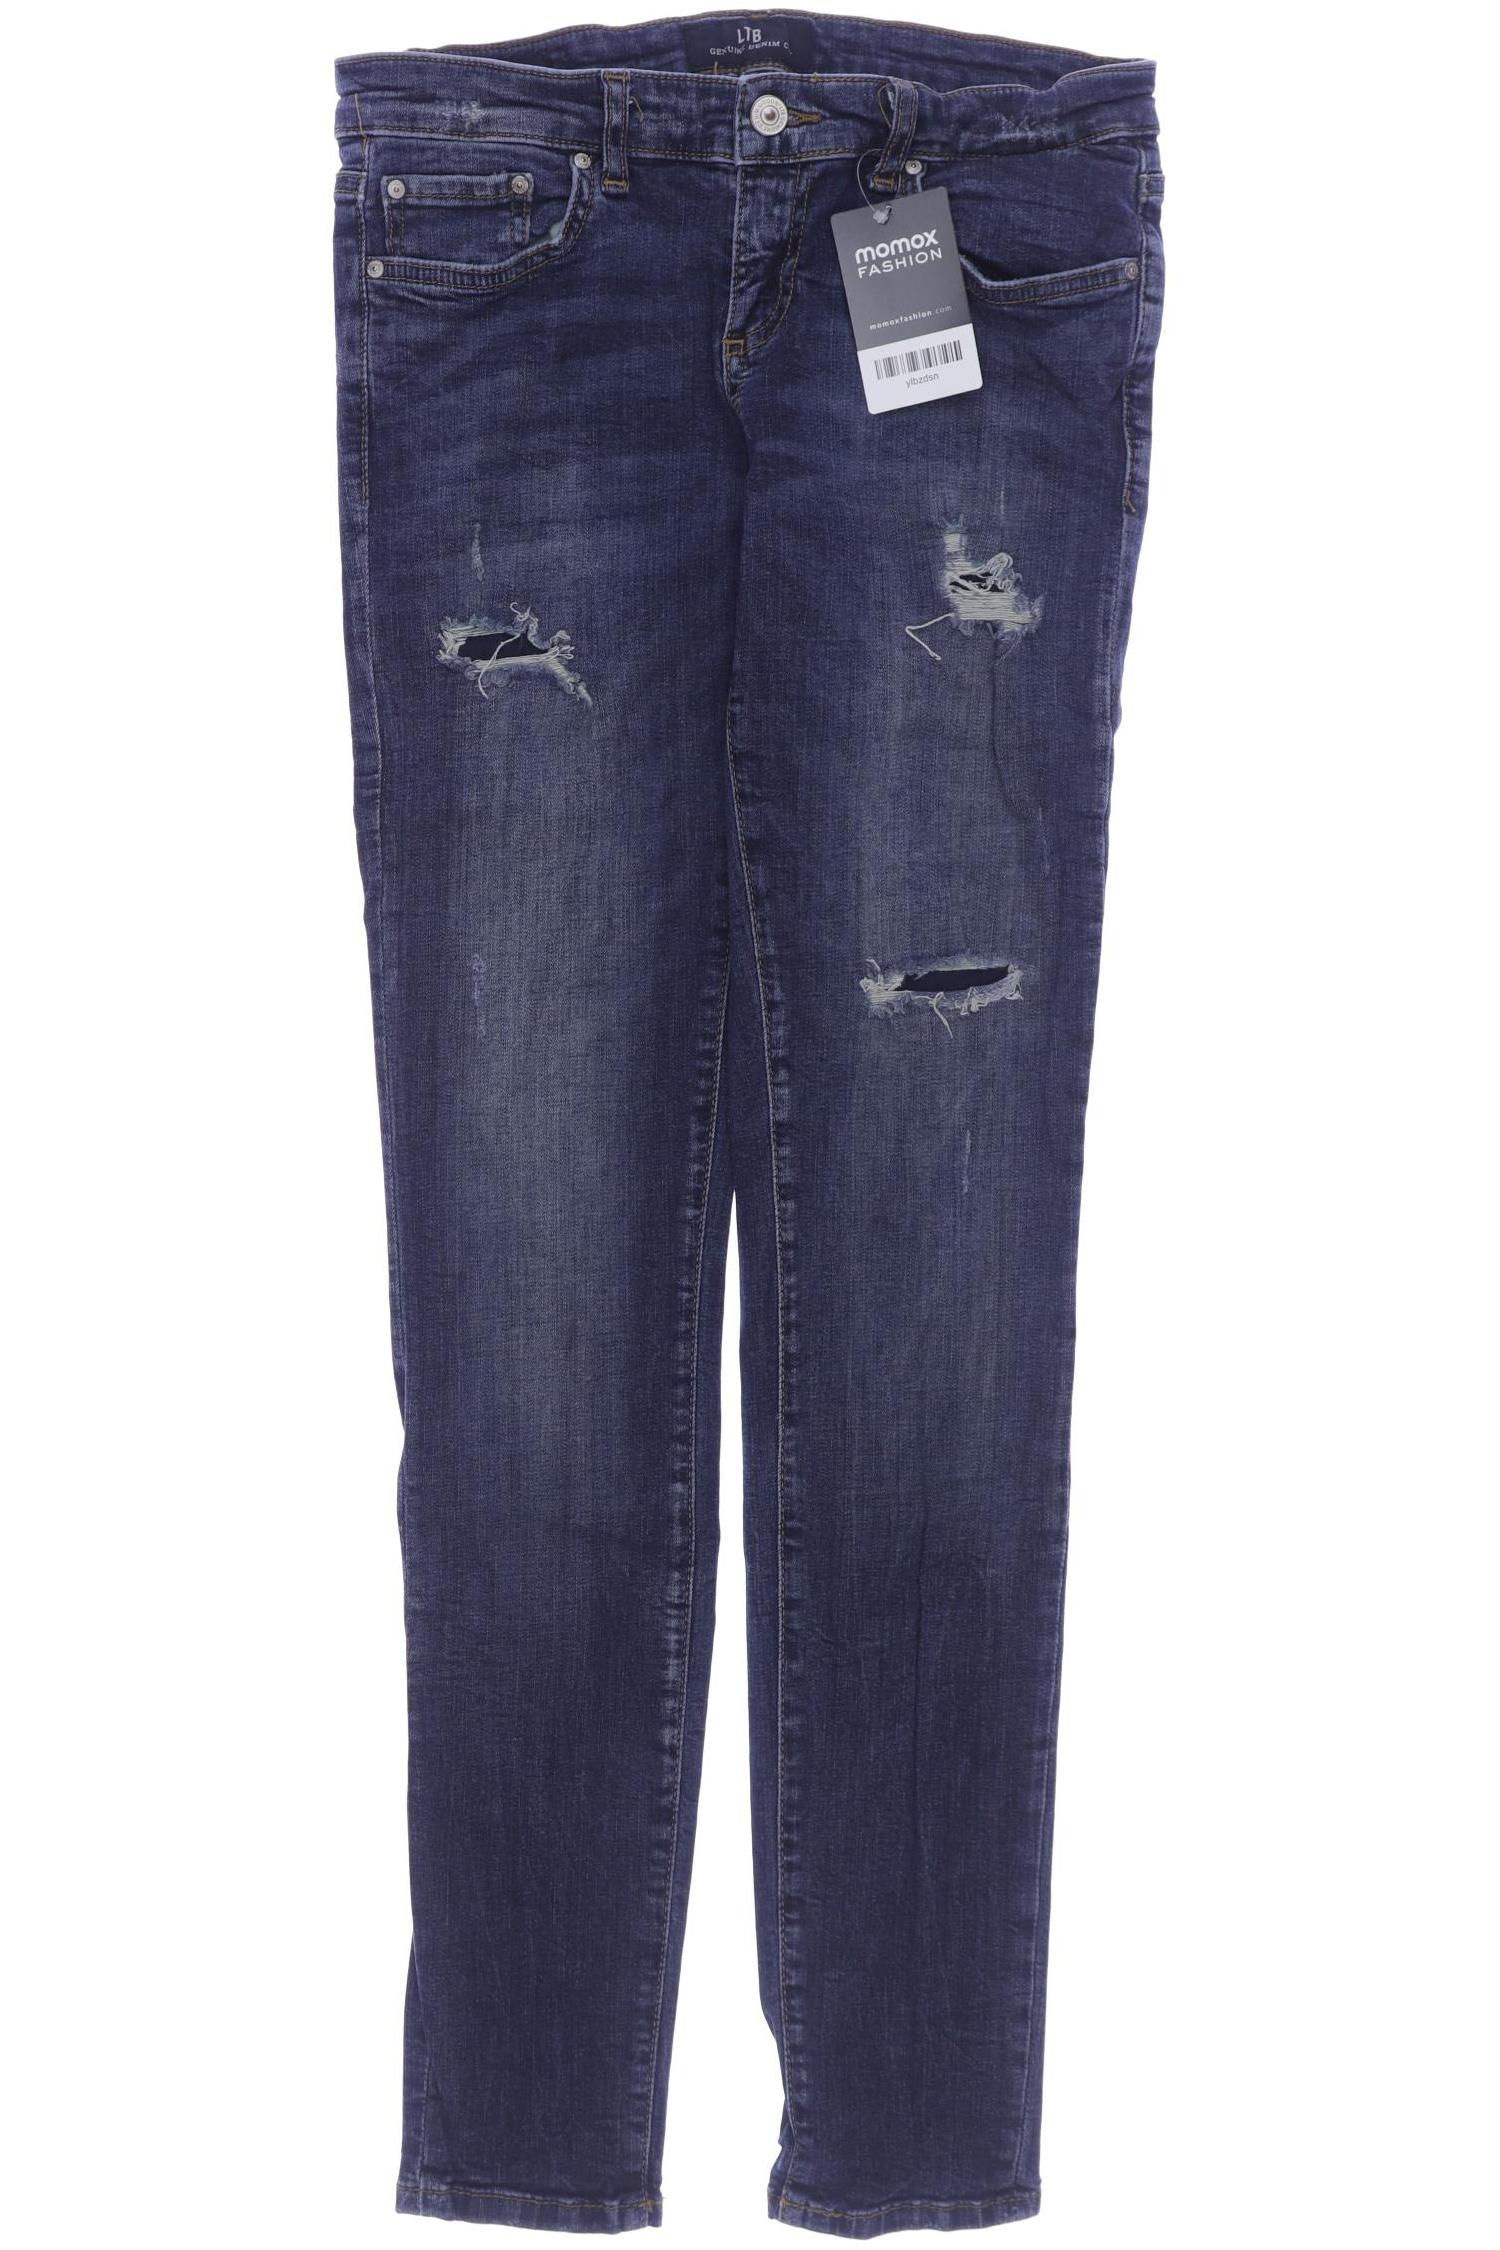 LTB Damen Jeans, blau, Gr. 38 von LTB